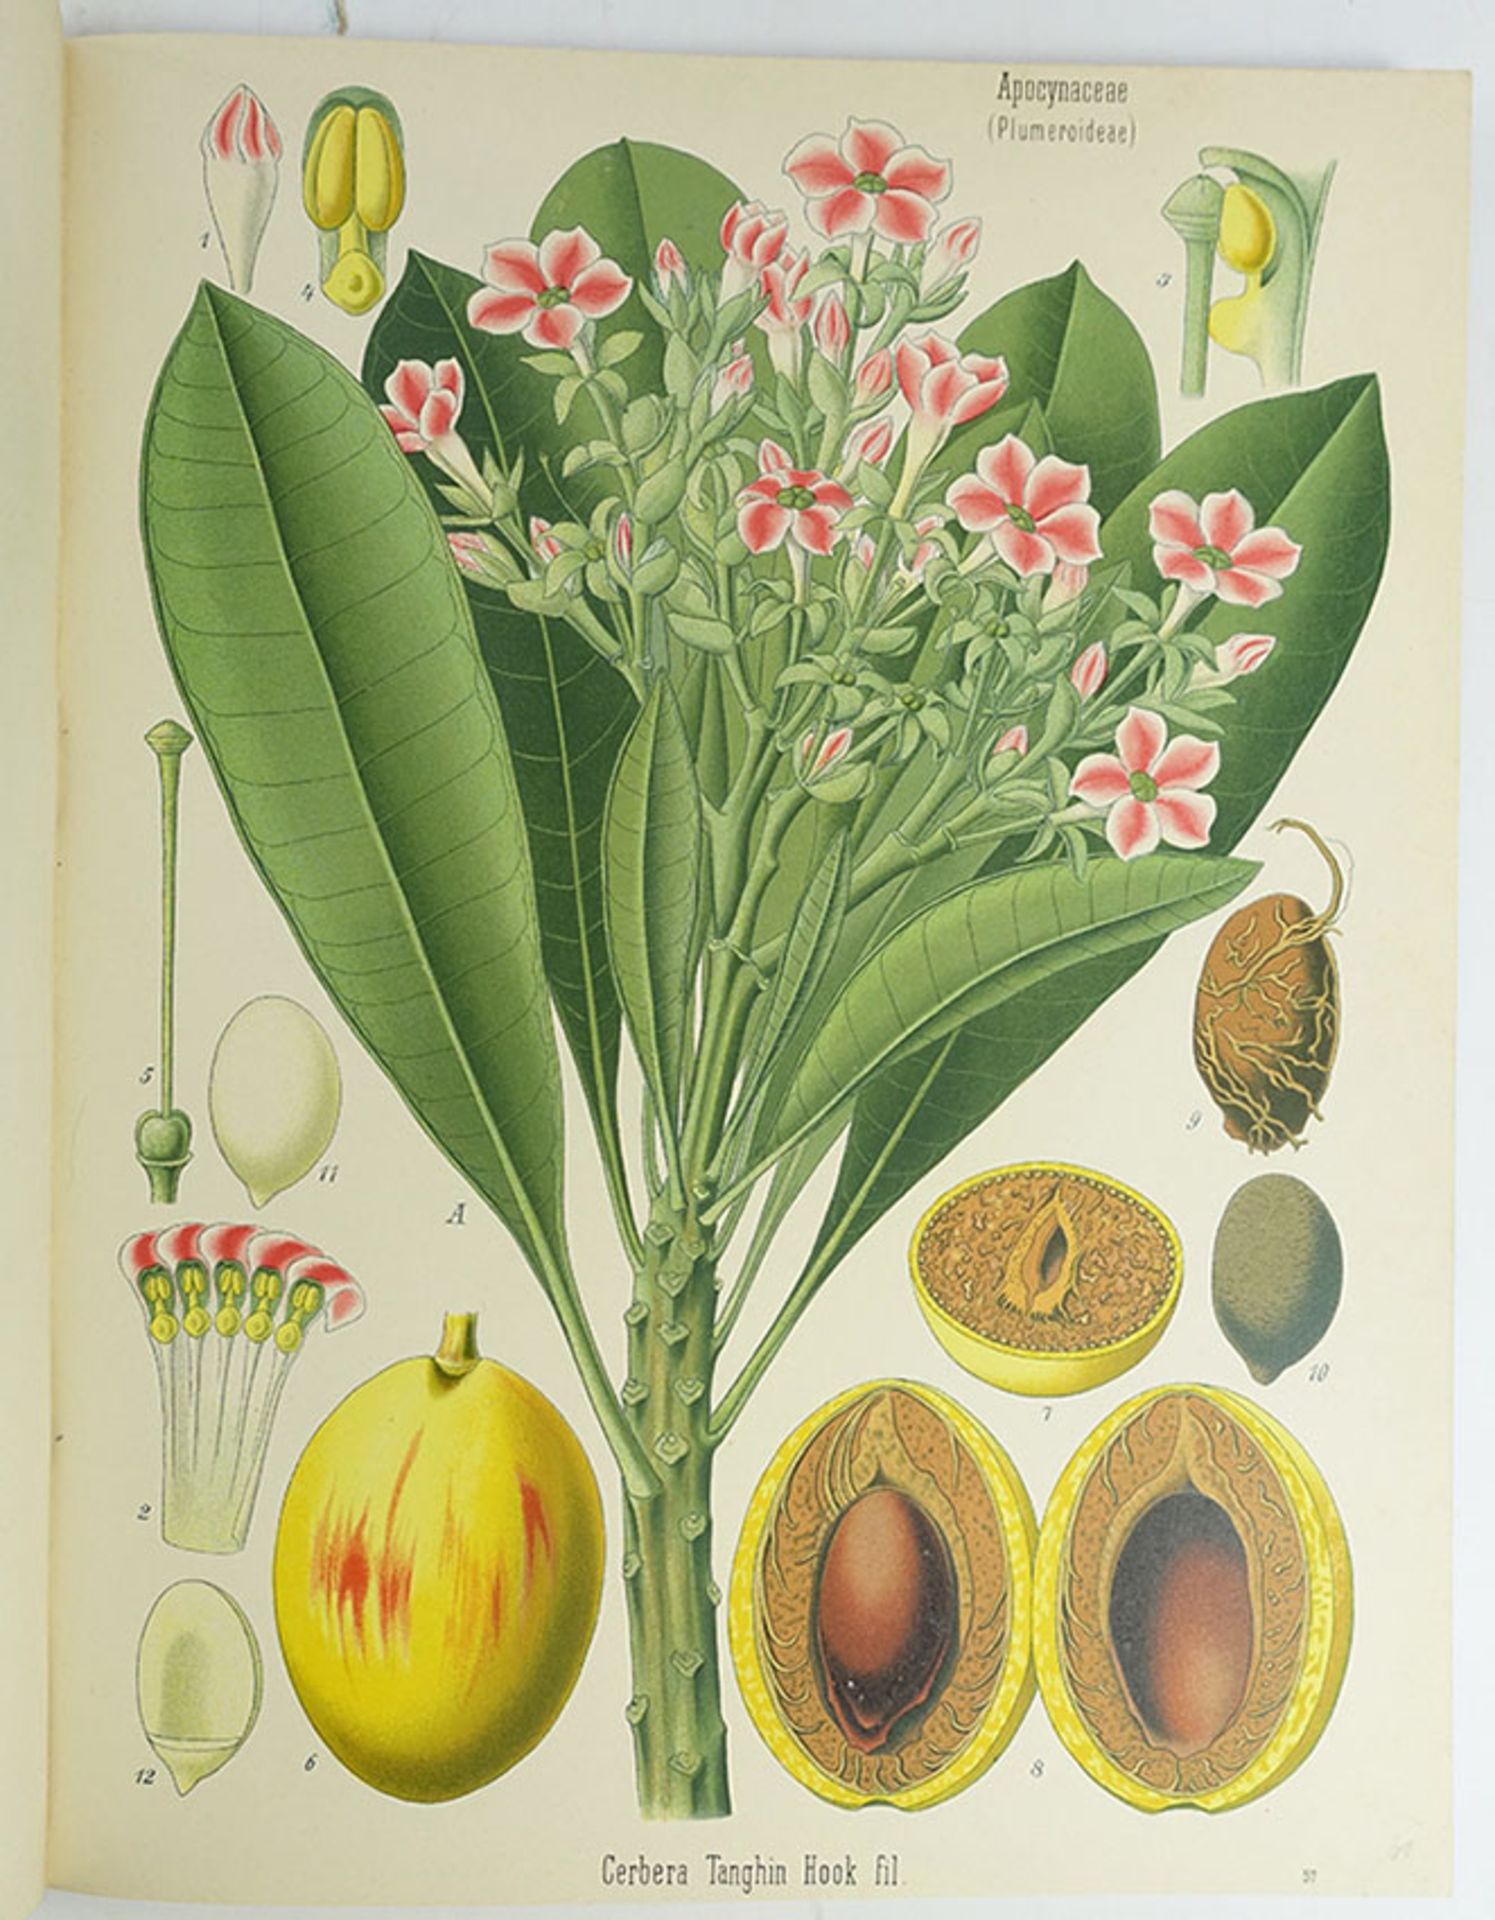 KÖHLER, H.A. Köhler's Medizinal-Pflanzen in naturgetreuen Abbildungen mit kurz erläuterndem Texte.